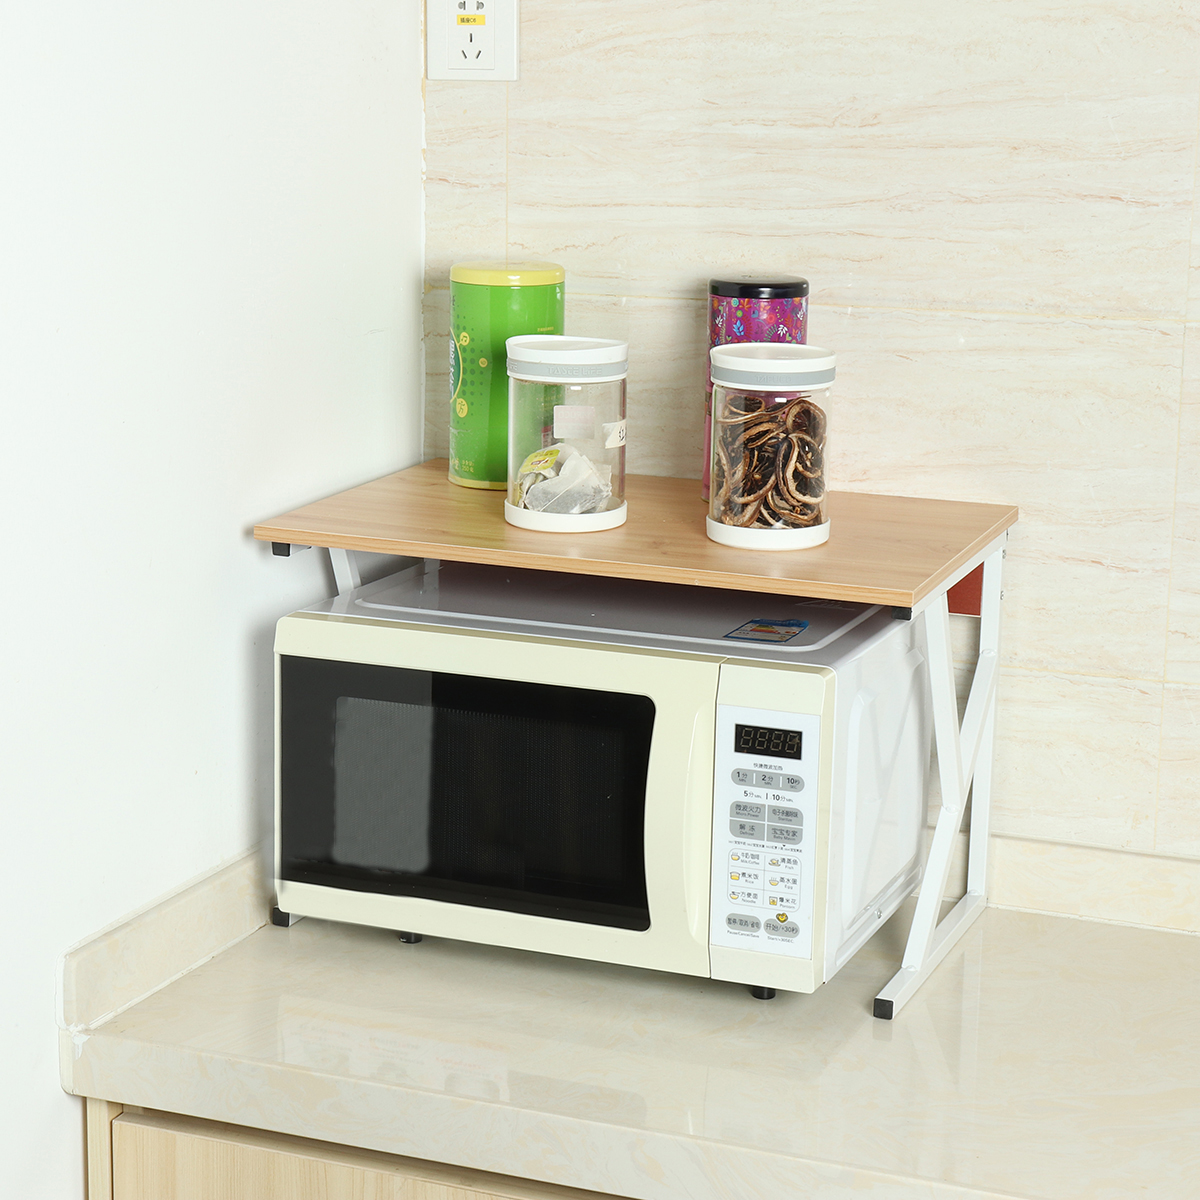 Microwave Oven Rack Kitchen Baker Stand Storage Shelf Kitchen Desktop Space Saving Organizer 66